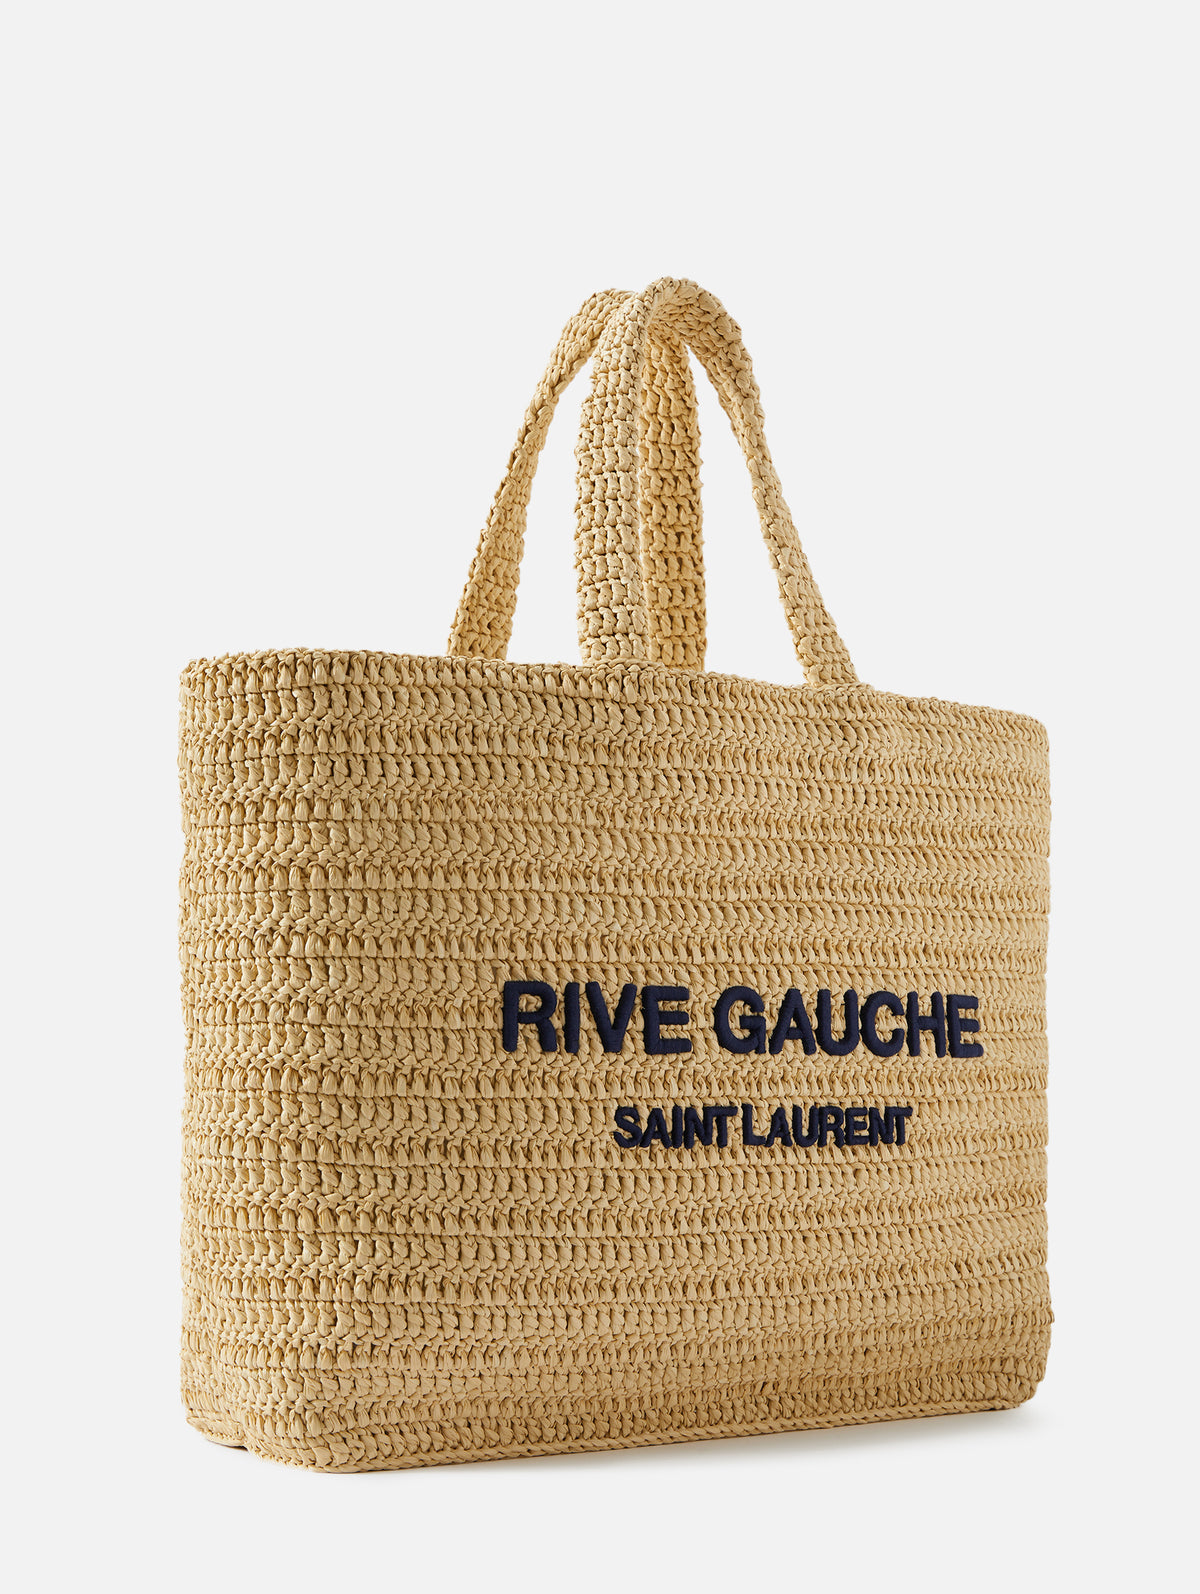 Raffia Handbags Collection for Women, Saint Laurent